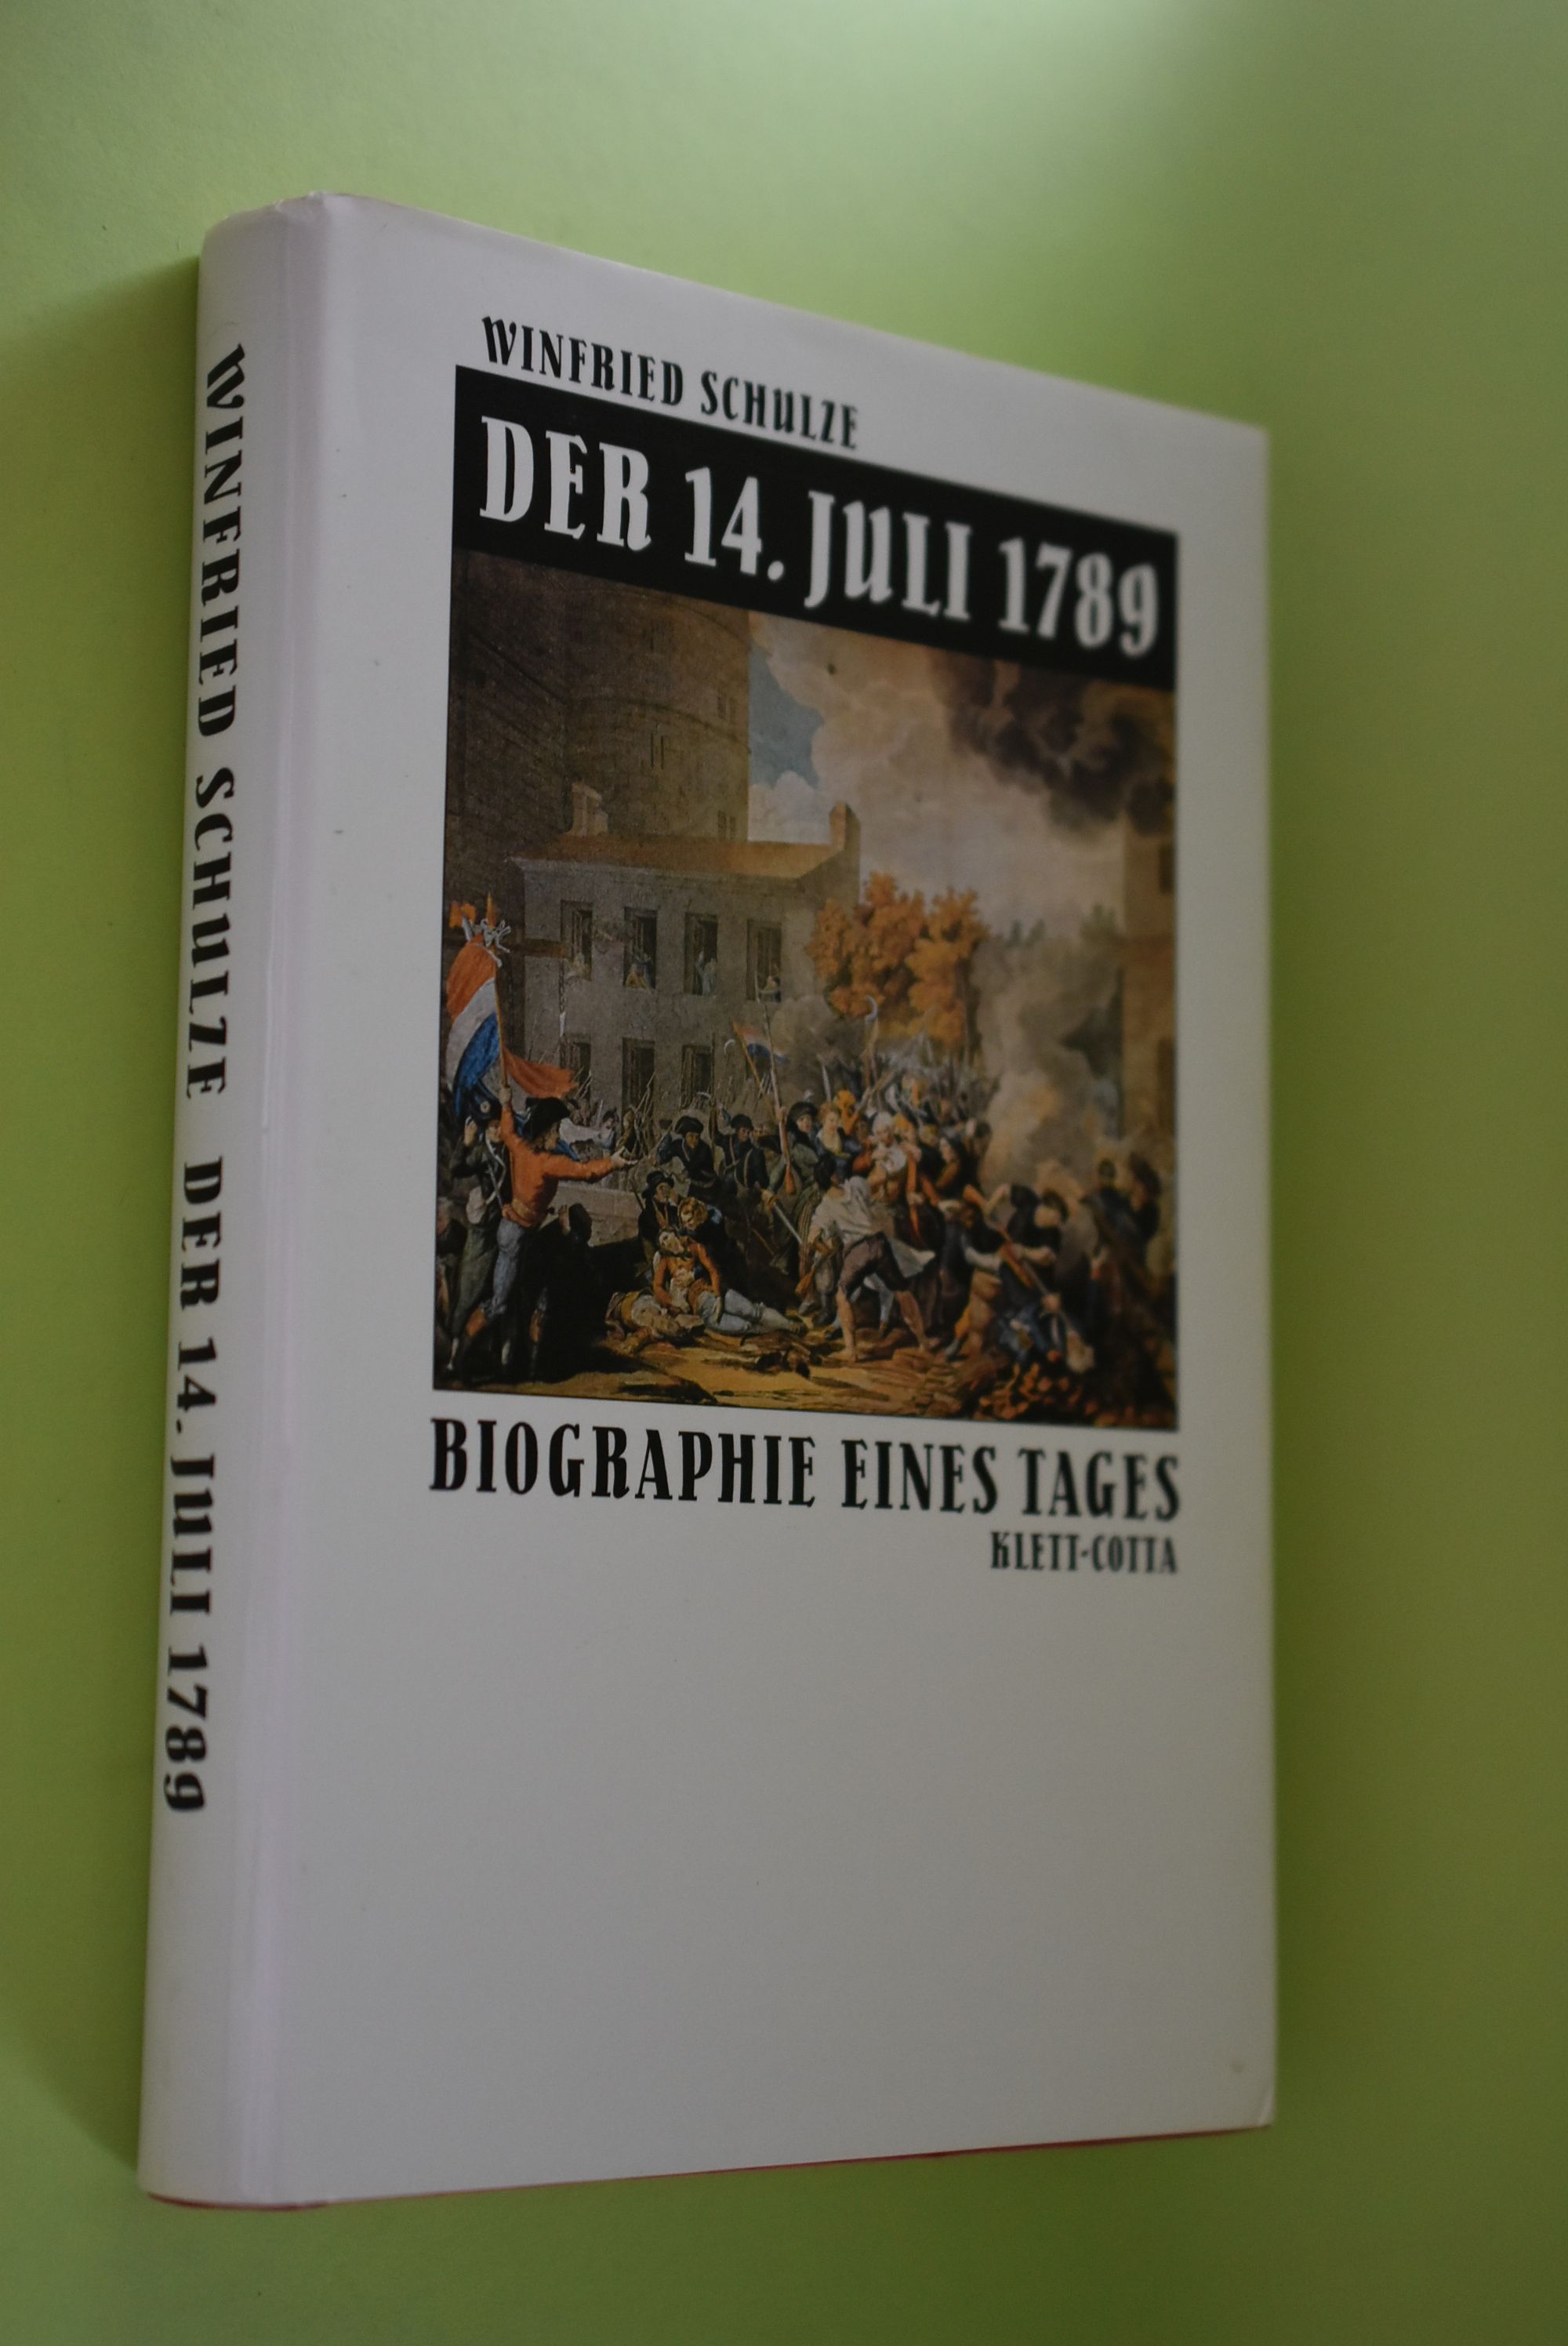 Der 14. [vierzehnte] Juli 1789 : Biographie eines Tages. - Schulze, Winfried